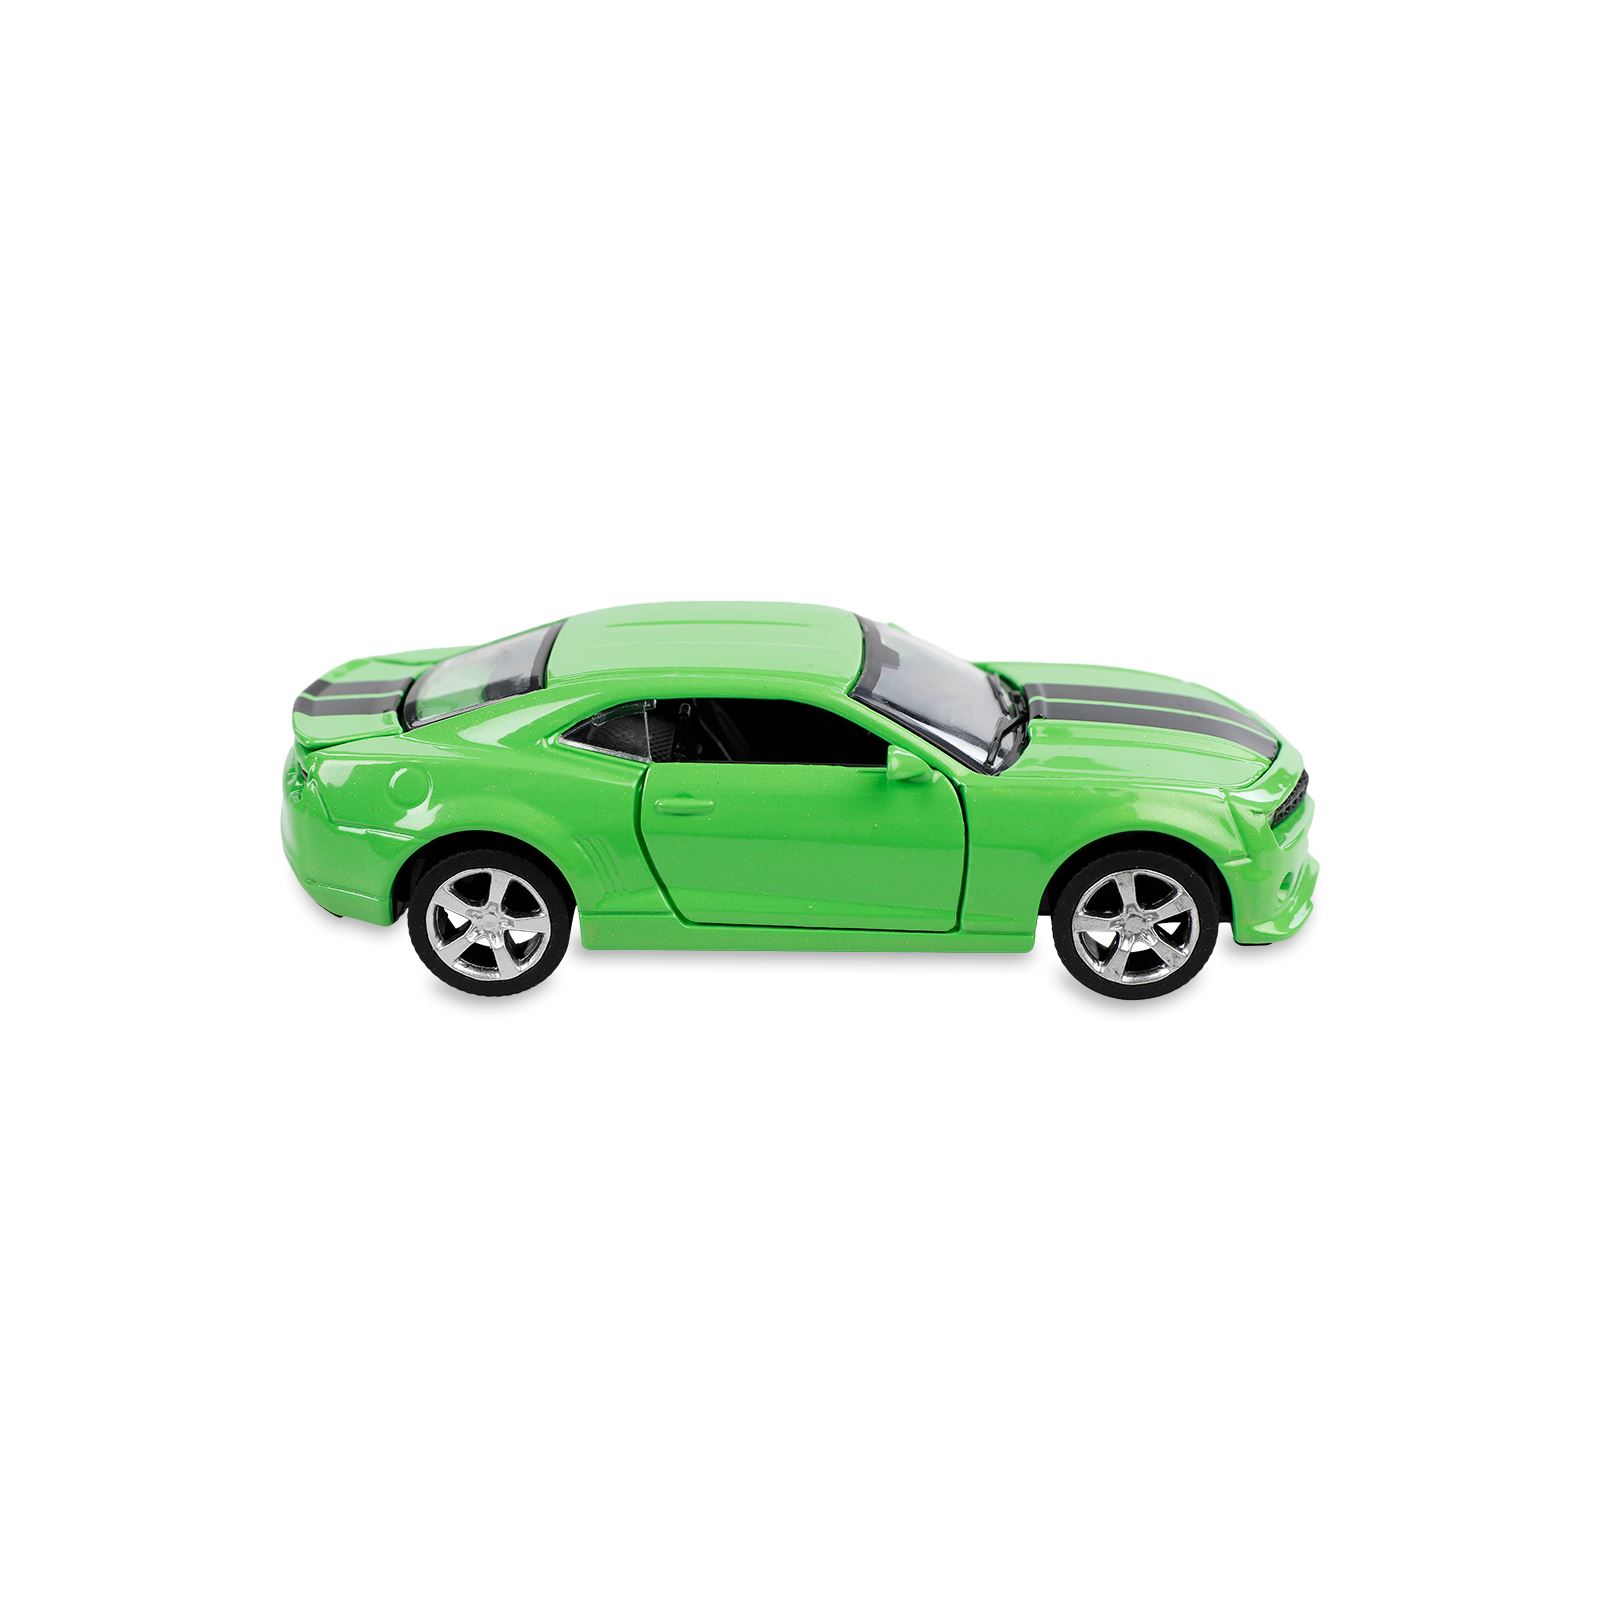 Vardem Oyuncak Çek Bırak Metal Araba Yeşil